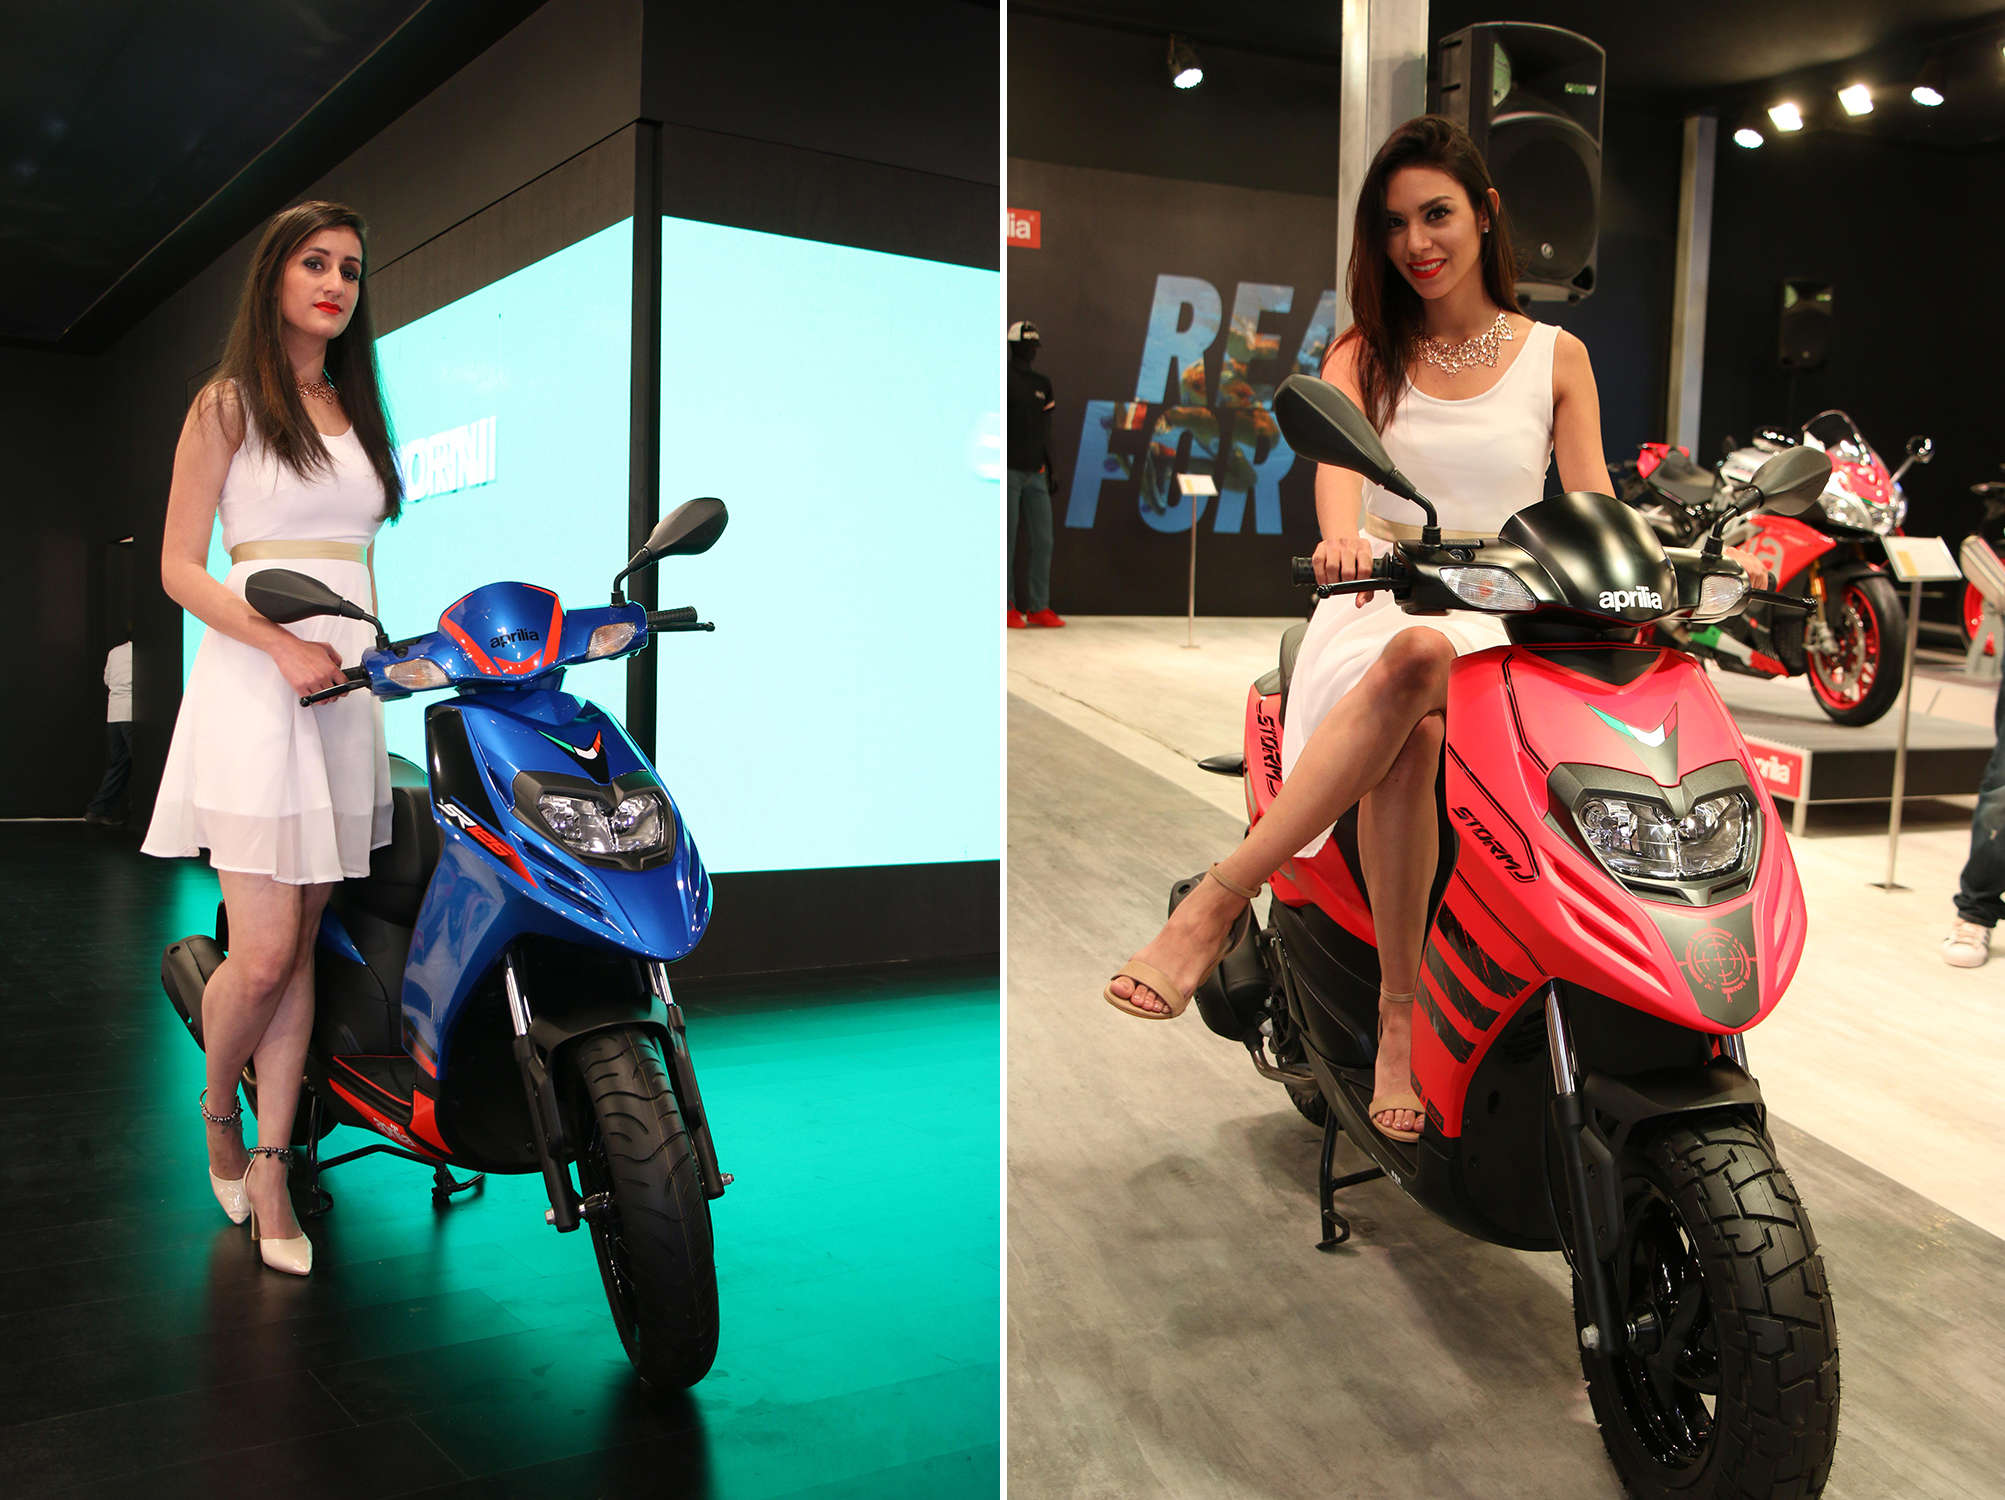 Il Gruppo Piaggio amplia l’offerta di scooter in India: alla fiera Auto Expo presentati i nuovi Scooter Aprilia da 125 cc, Aprilia SR 125 e Aprilia Storm 125